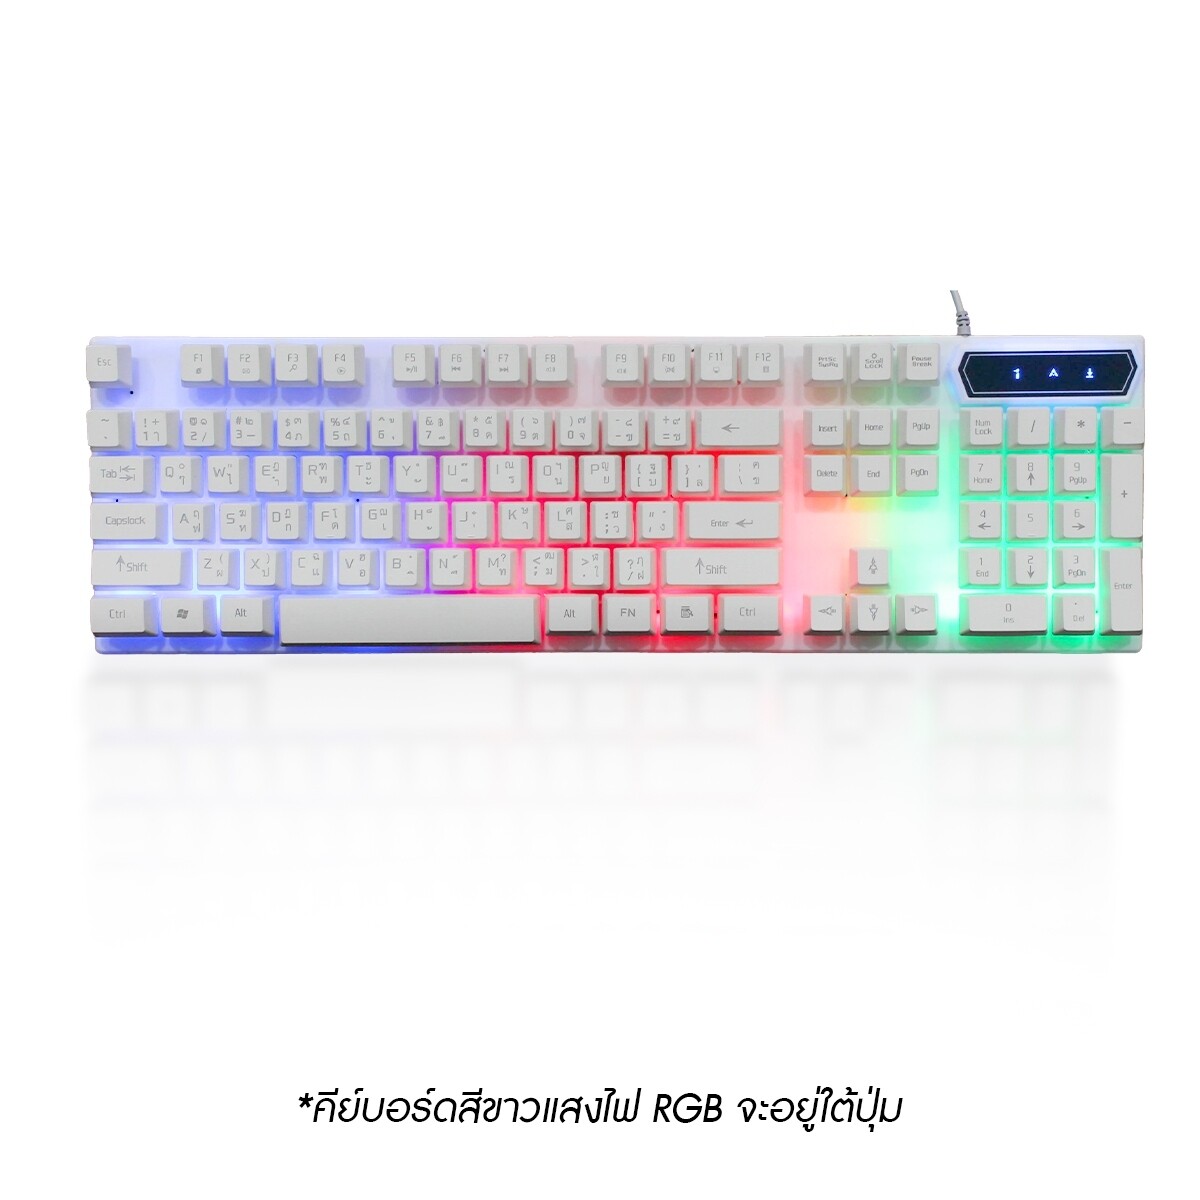 YINDIAO คีบอดเกมมิ่ง คีย์บอร์ด แป้นพิมพ์ LED คีบอร์ดเกมมิ่ง ภาษาไทย USB Keyboard ไฟรุ้ง7สี